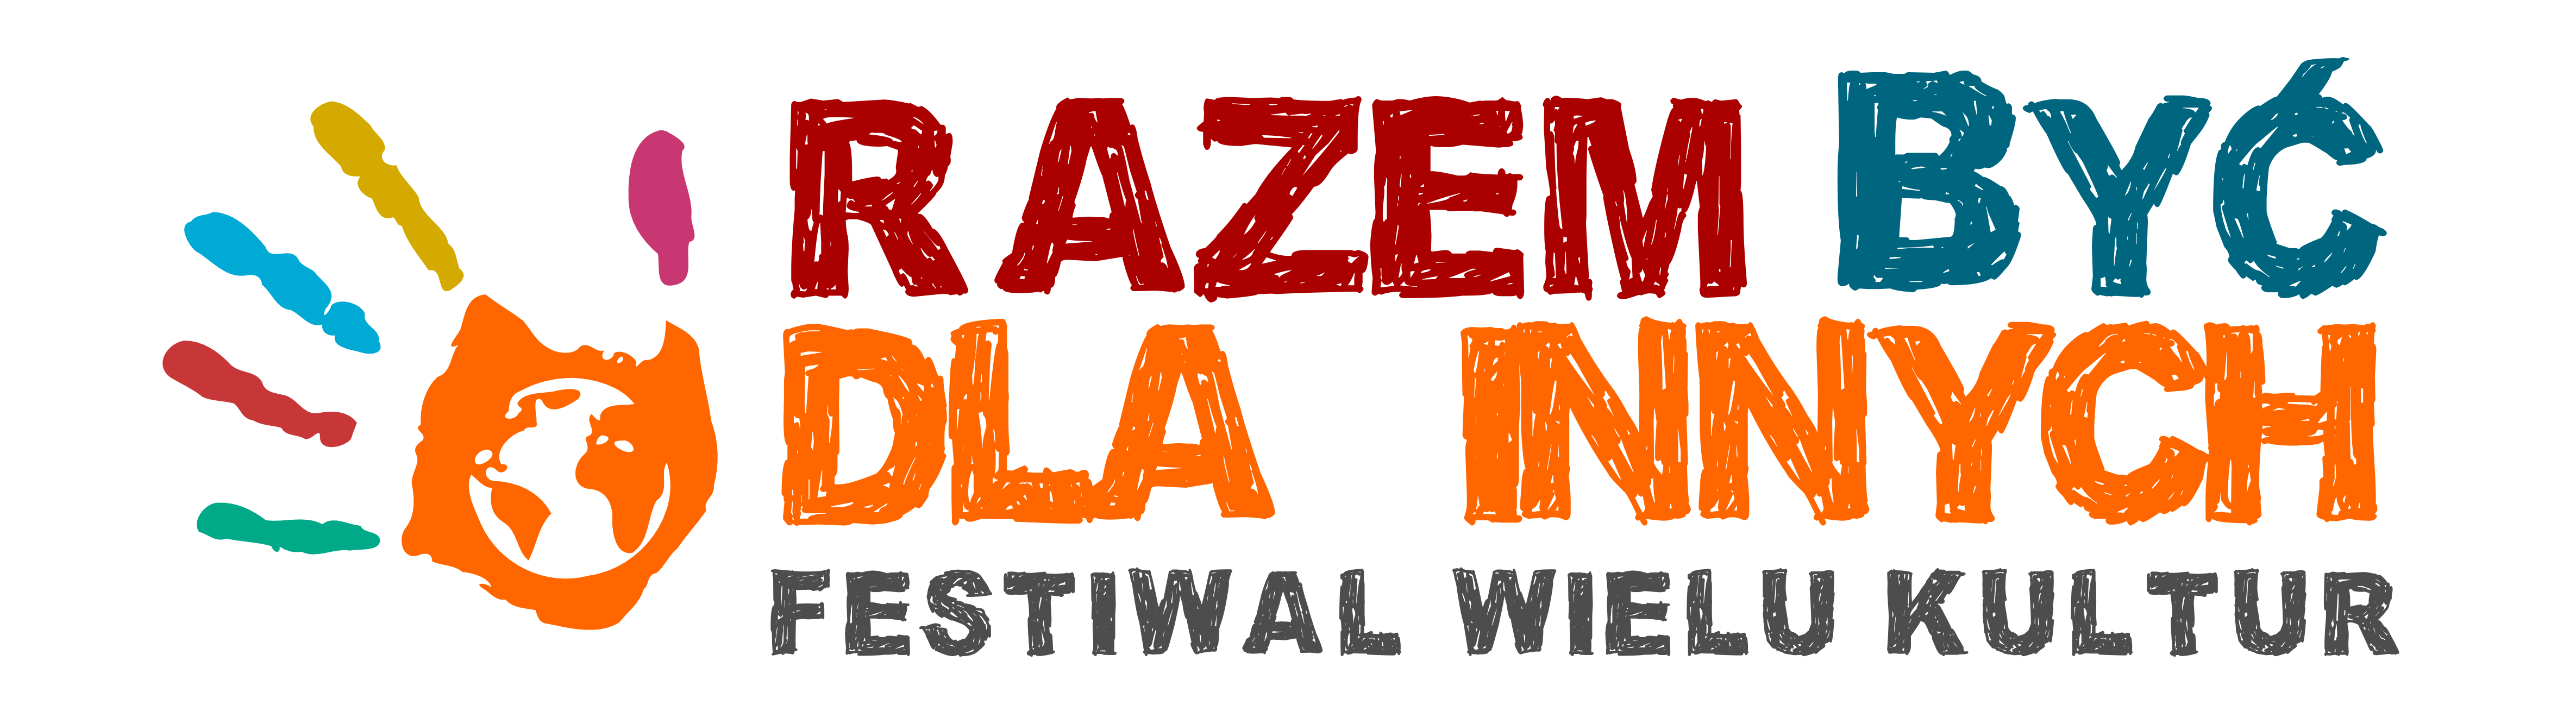 logo festiwalu